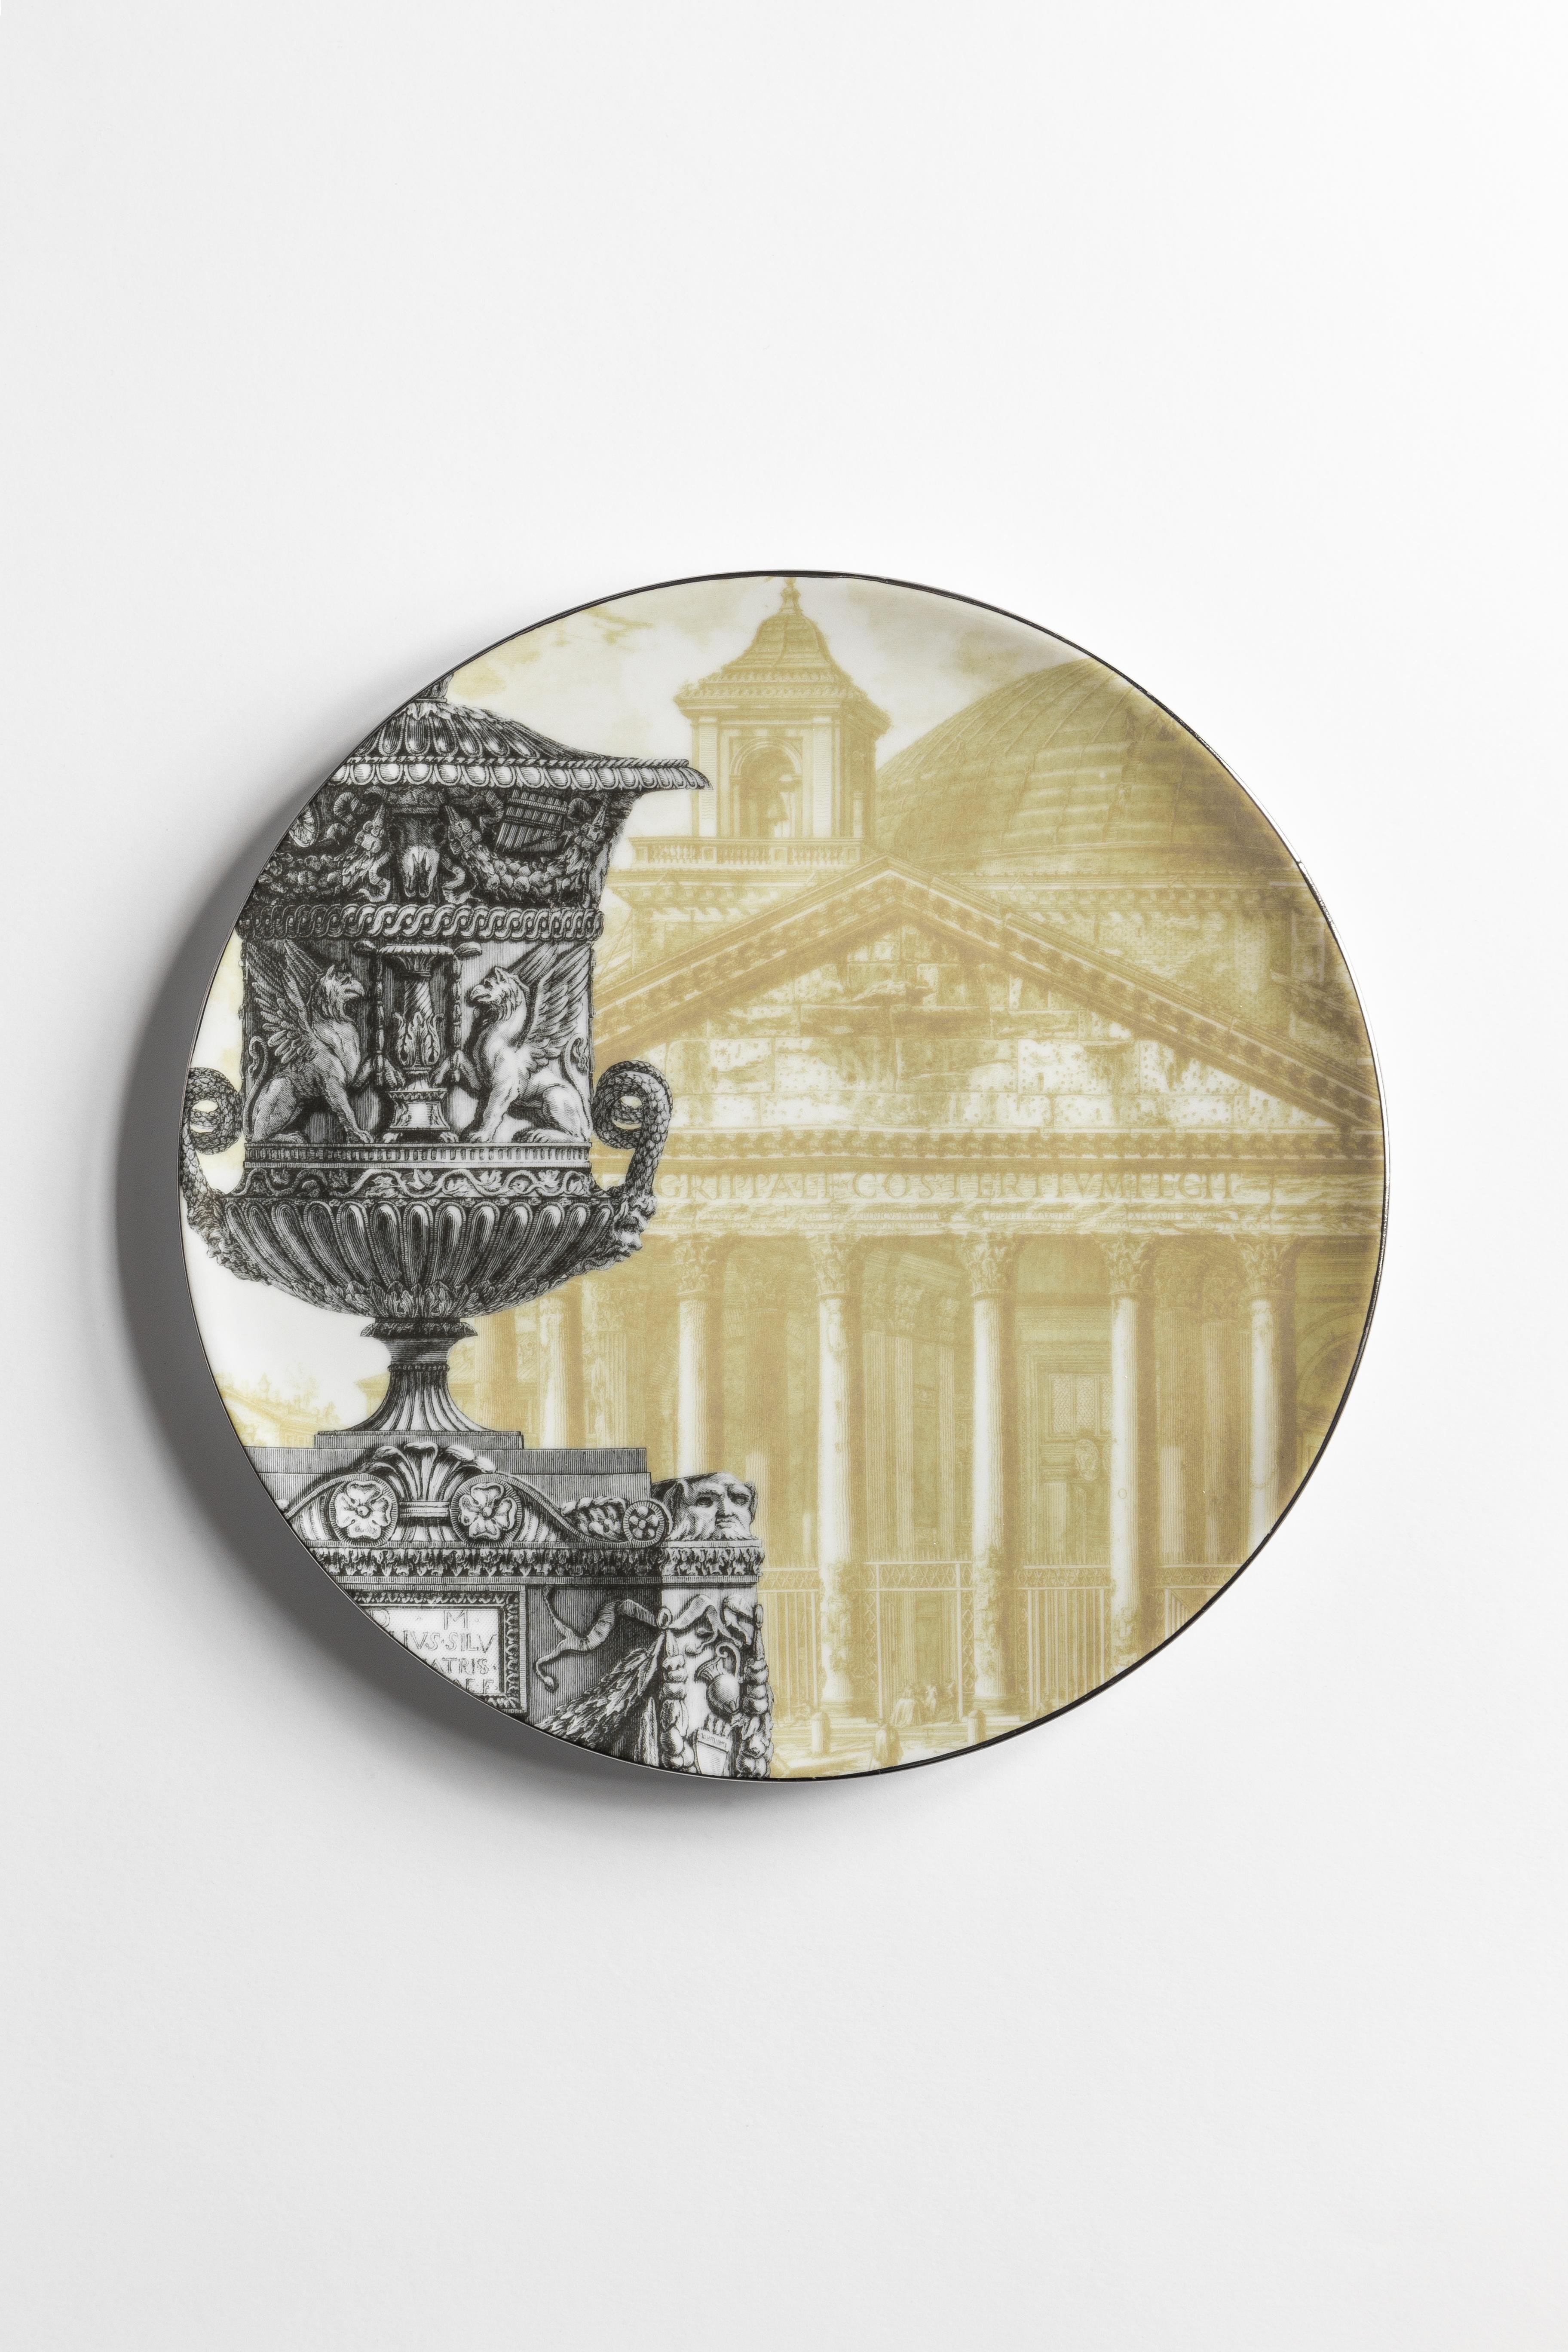 La collezione Roma è un'ode alla magnificenza della città eterna. Sullo sfondo dei piatti che raffigurano serigrafie di alcuni dei luoghi più iconici della città - come il Pantheon e il Colosseo - spiccano illustrazioni antiche di vasi, anfore e